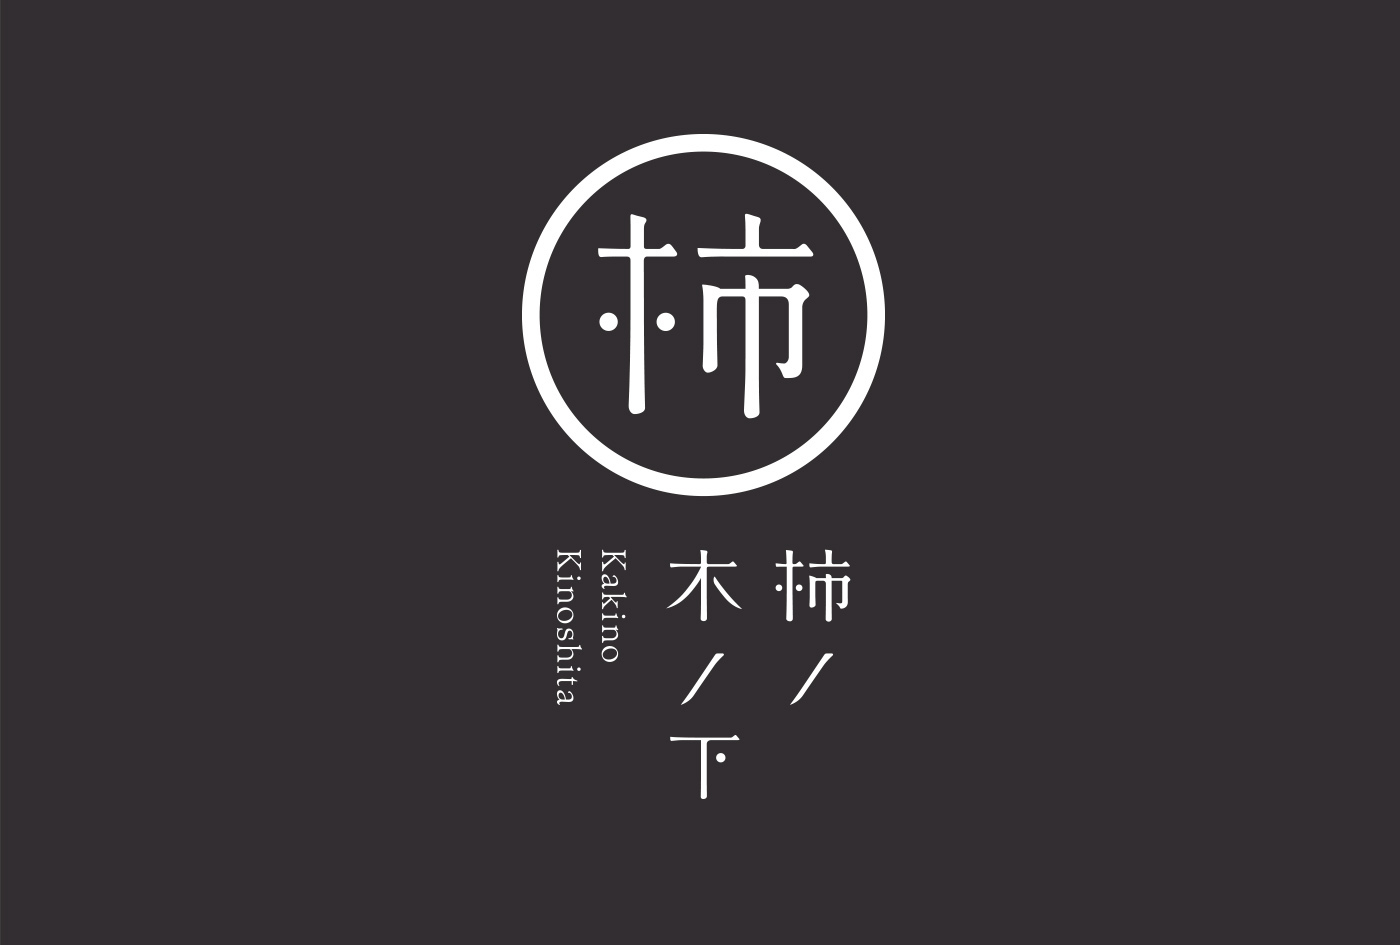 ギャラリー 和風 gallery japanese style kanji 漢字 chinise character